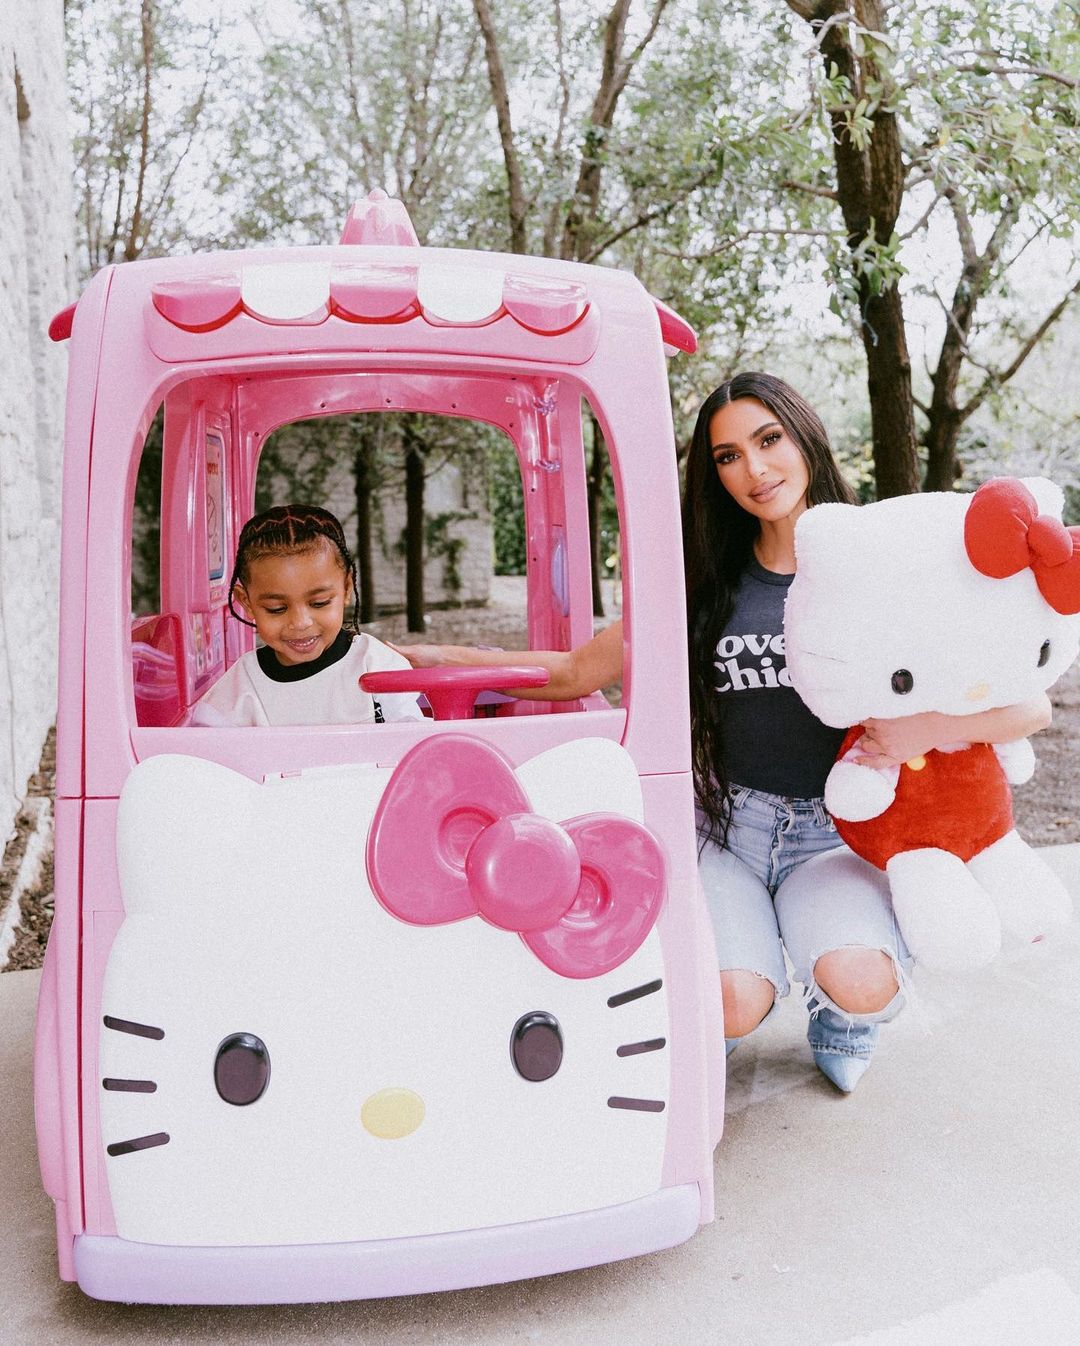 В стиле Hello Kitty: как Ким Кардашьян отметила 5-летие дочери